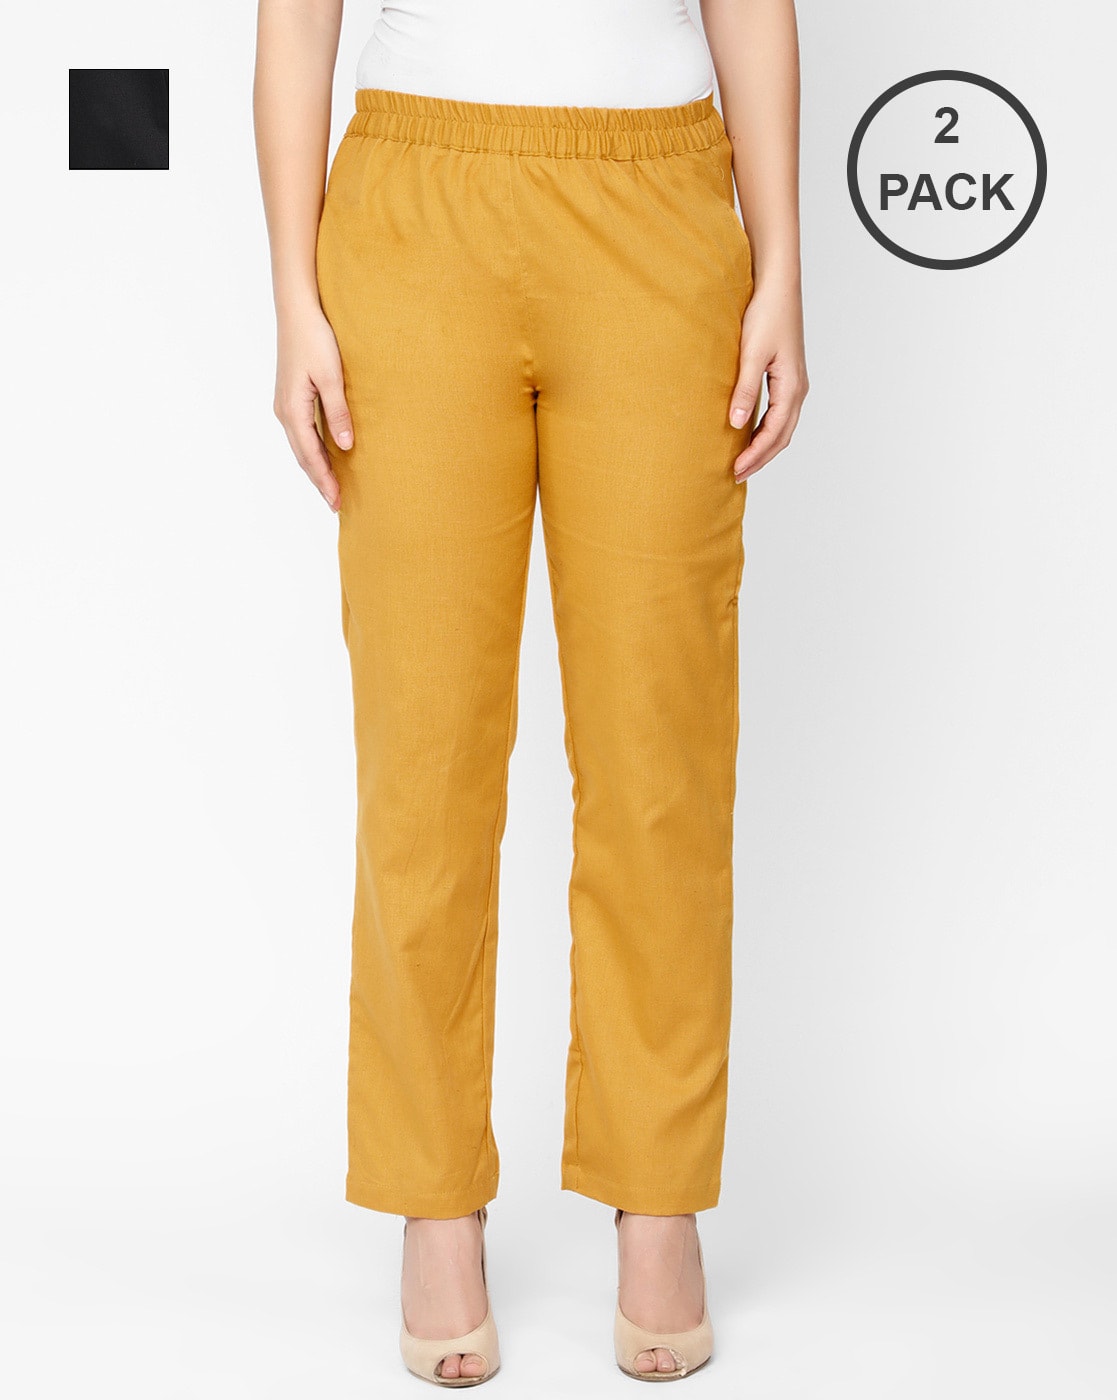 Amazon.com: Yellow Pants